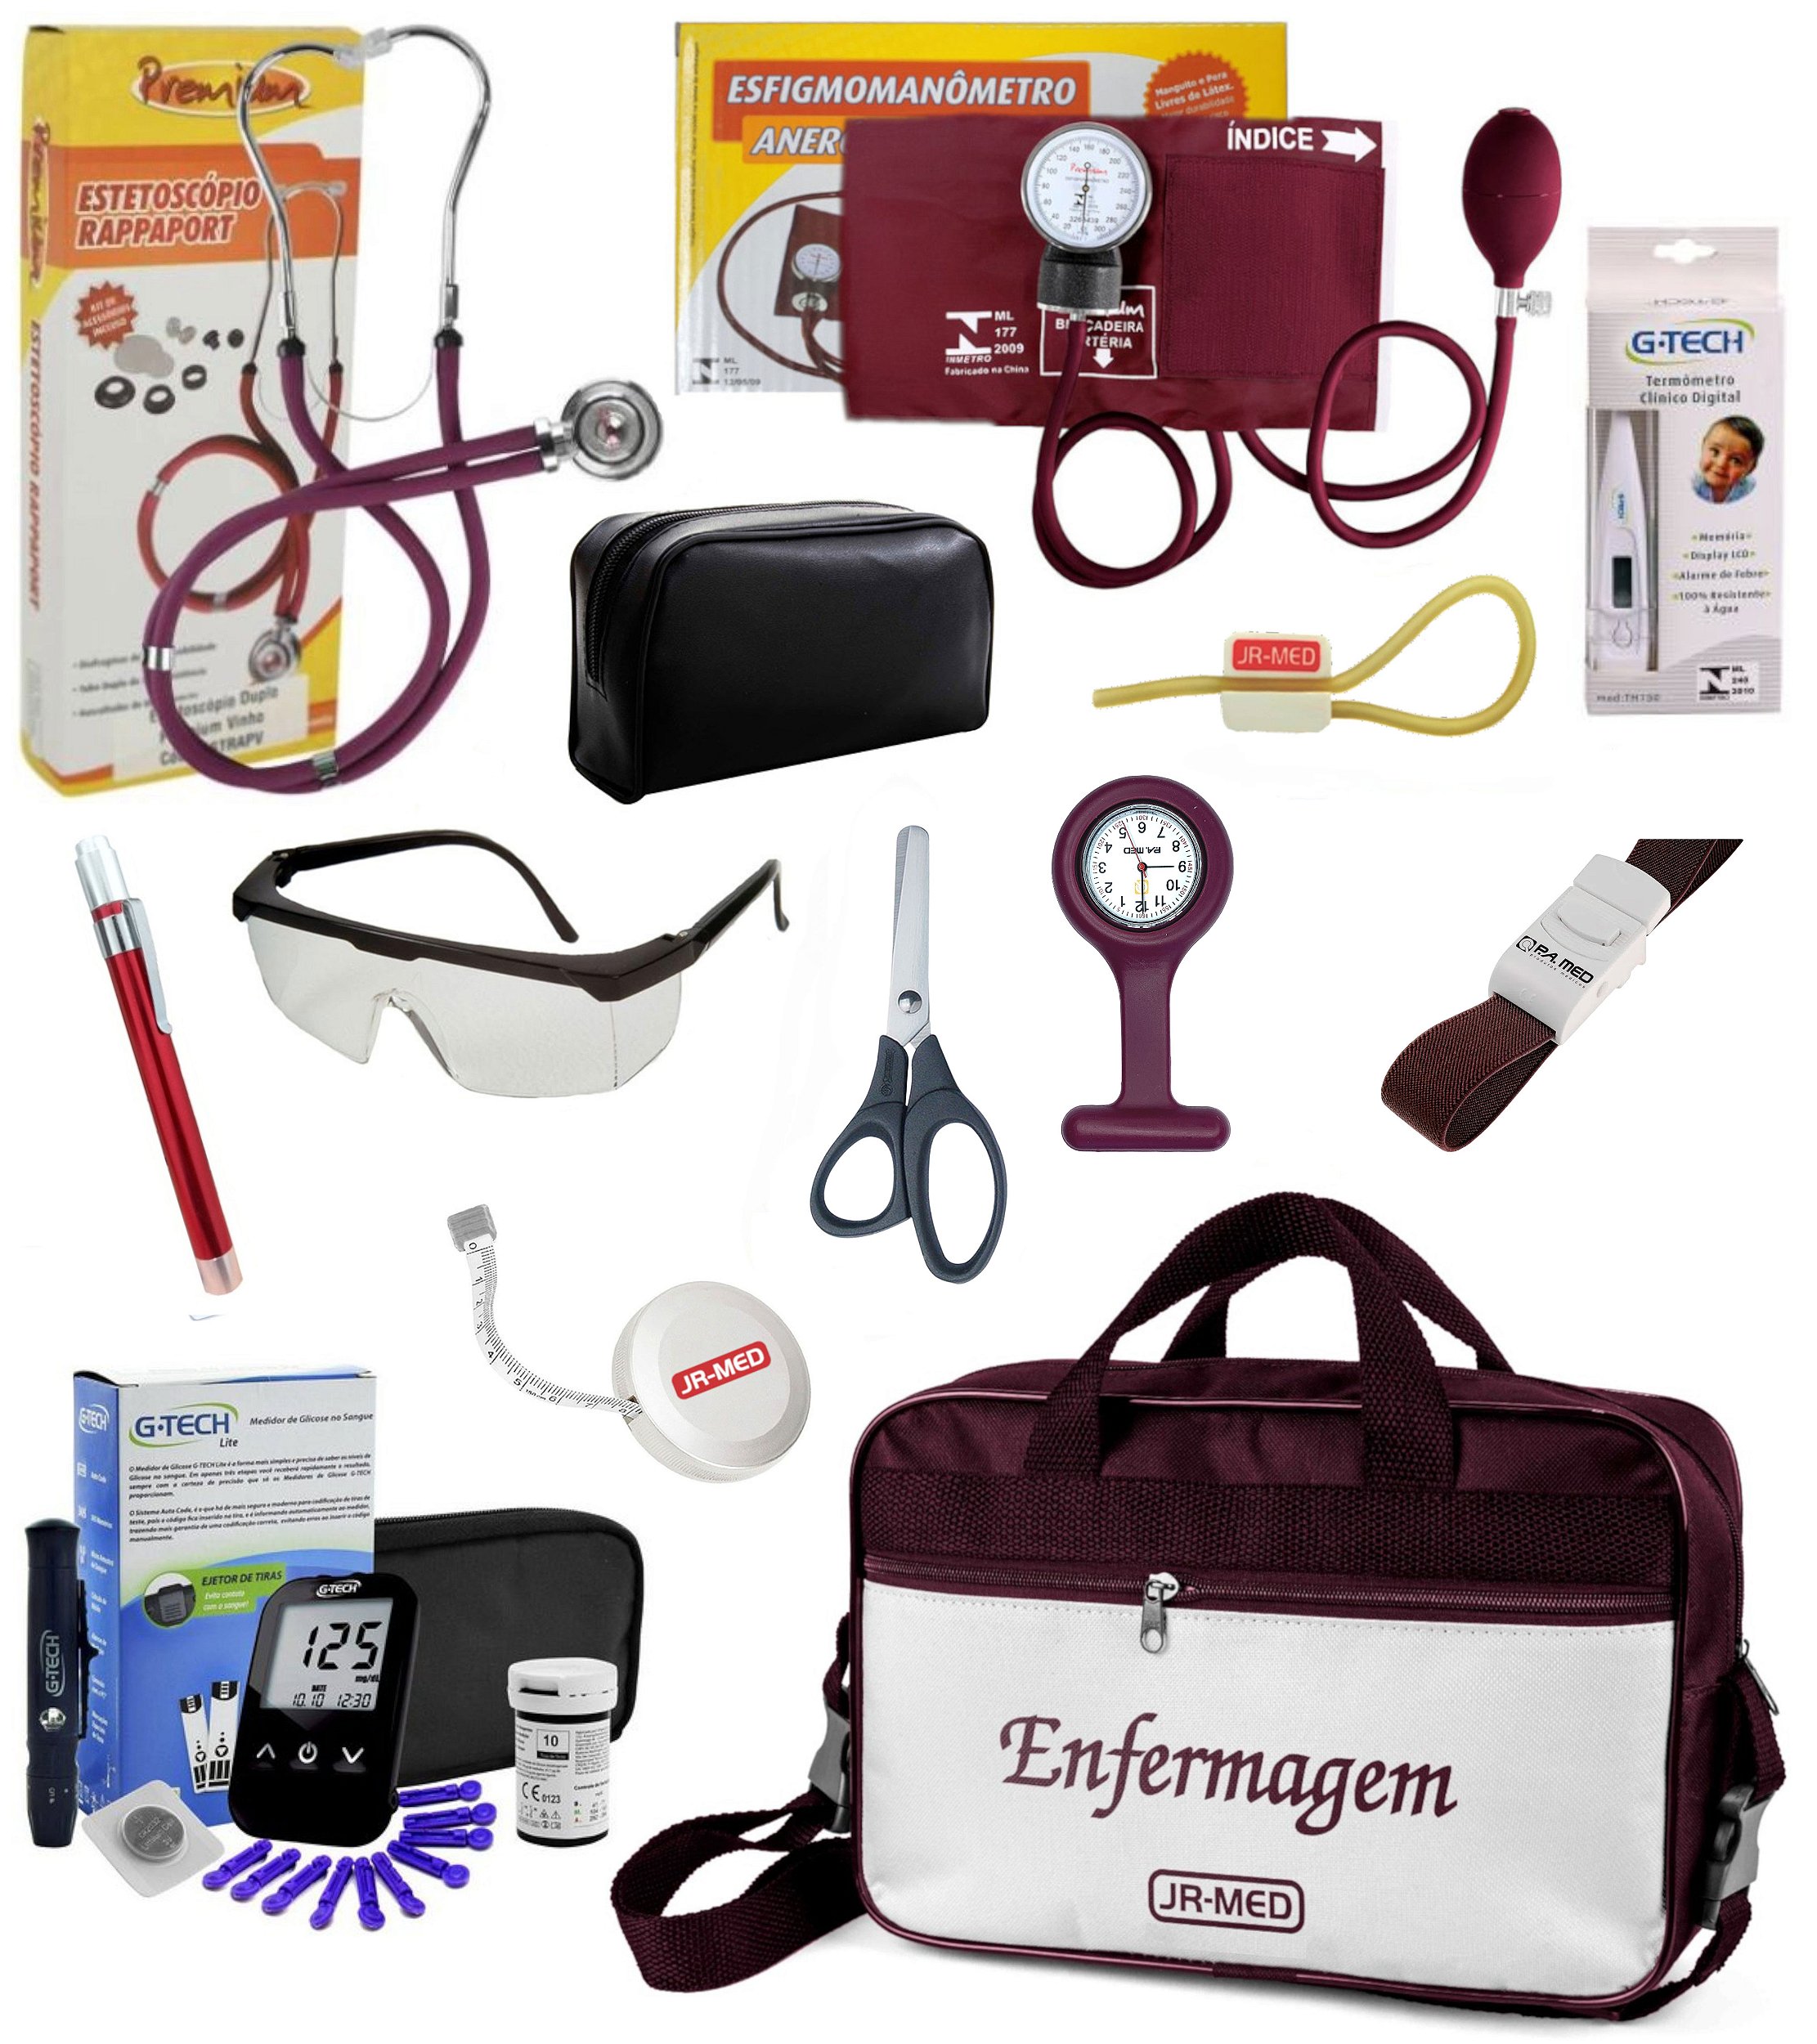 Kit Enfermagem Completo com Aparelho e Estetoscópio Premium + Relógio +  Glicose G-tech + Bolsa Estágio - JRMED